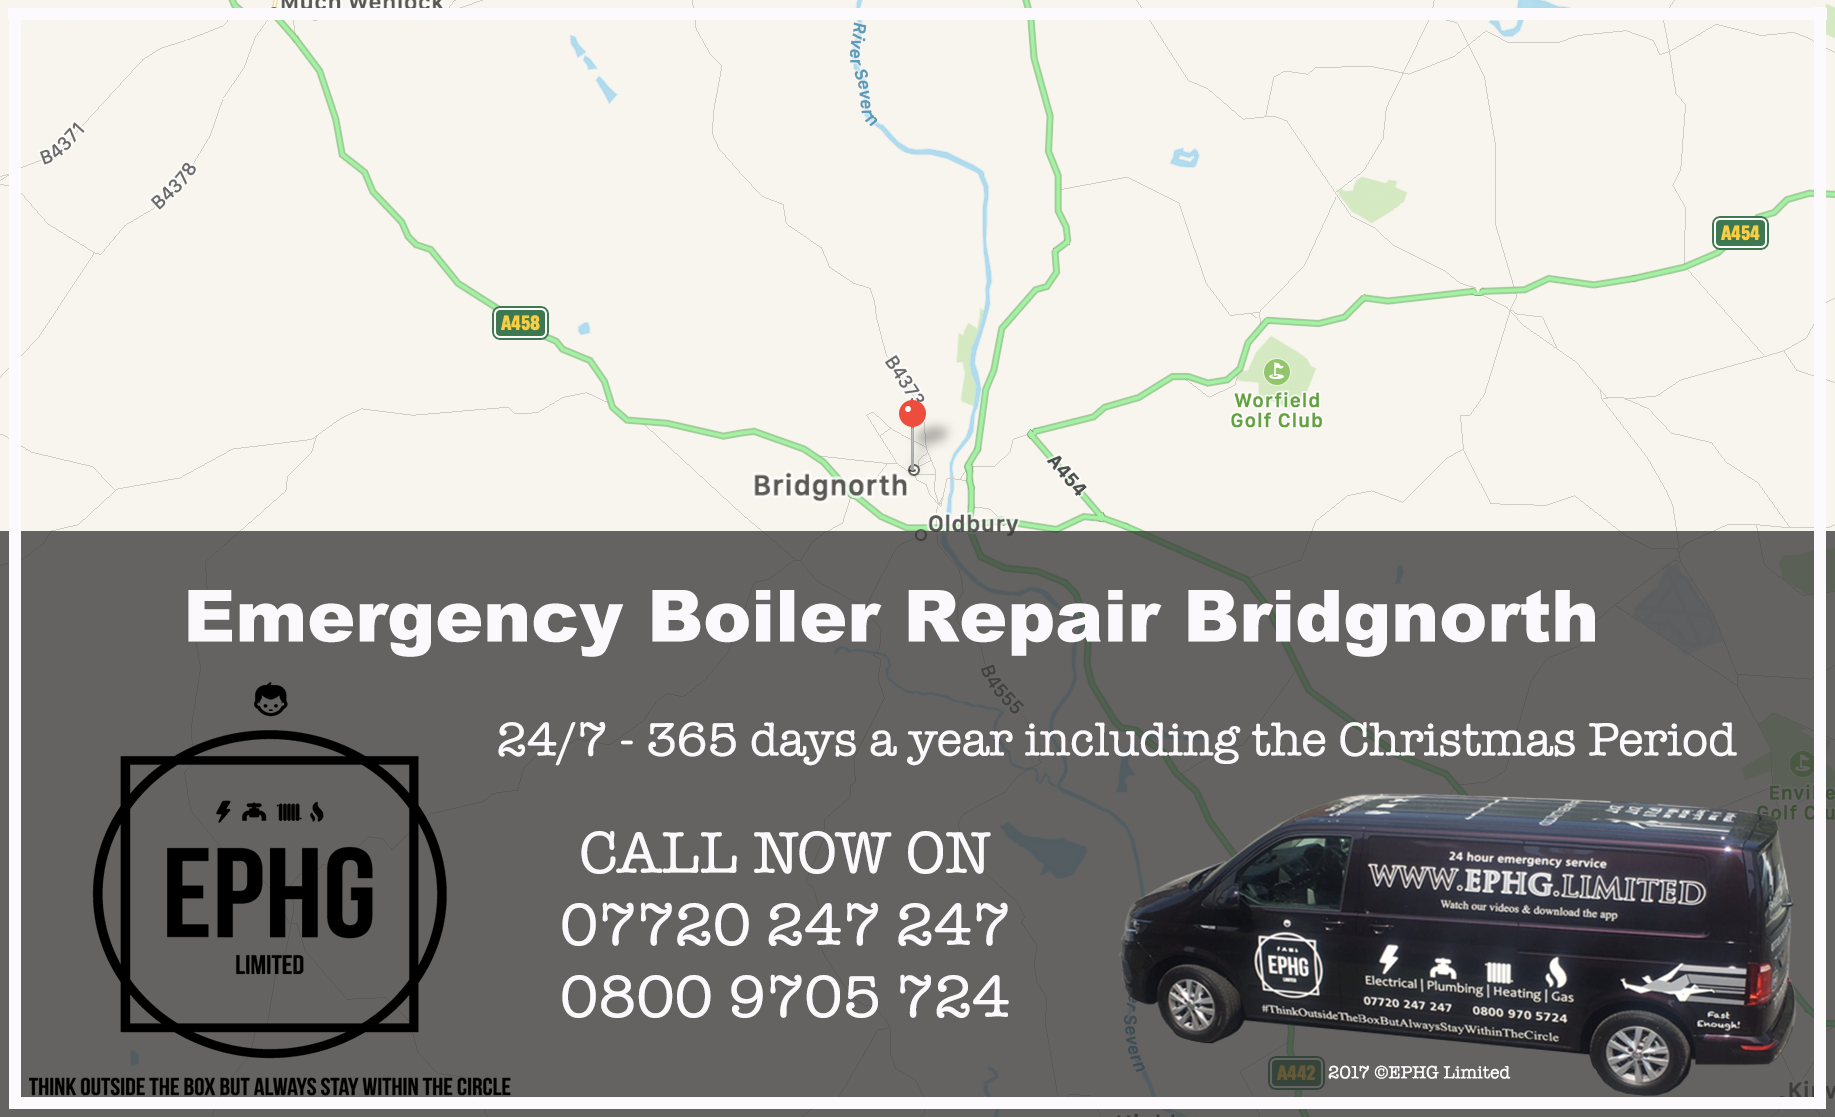 24 Hour Emergency Boiler Repair Bridgnorth